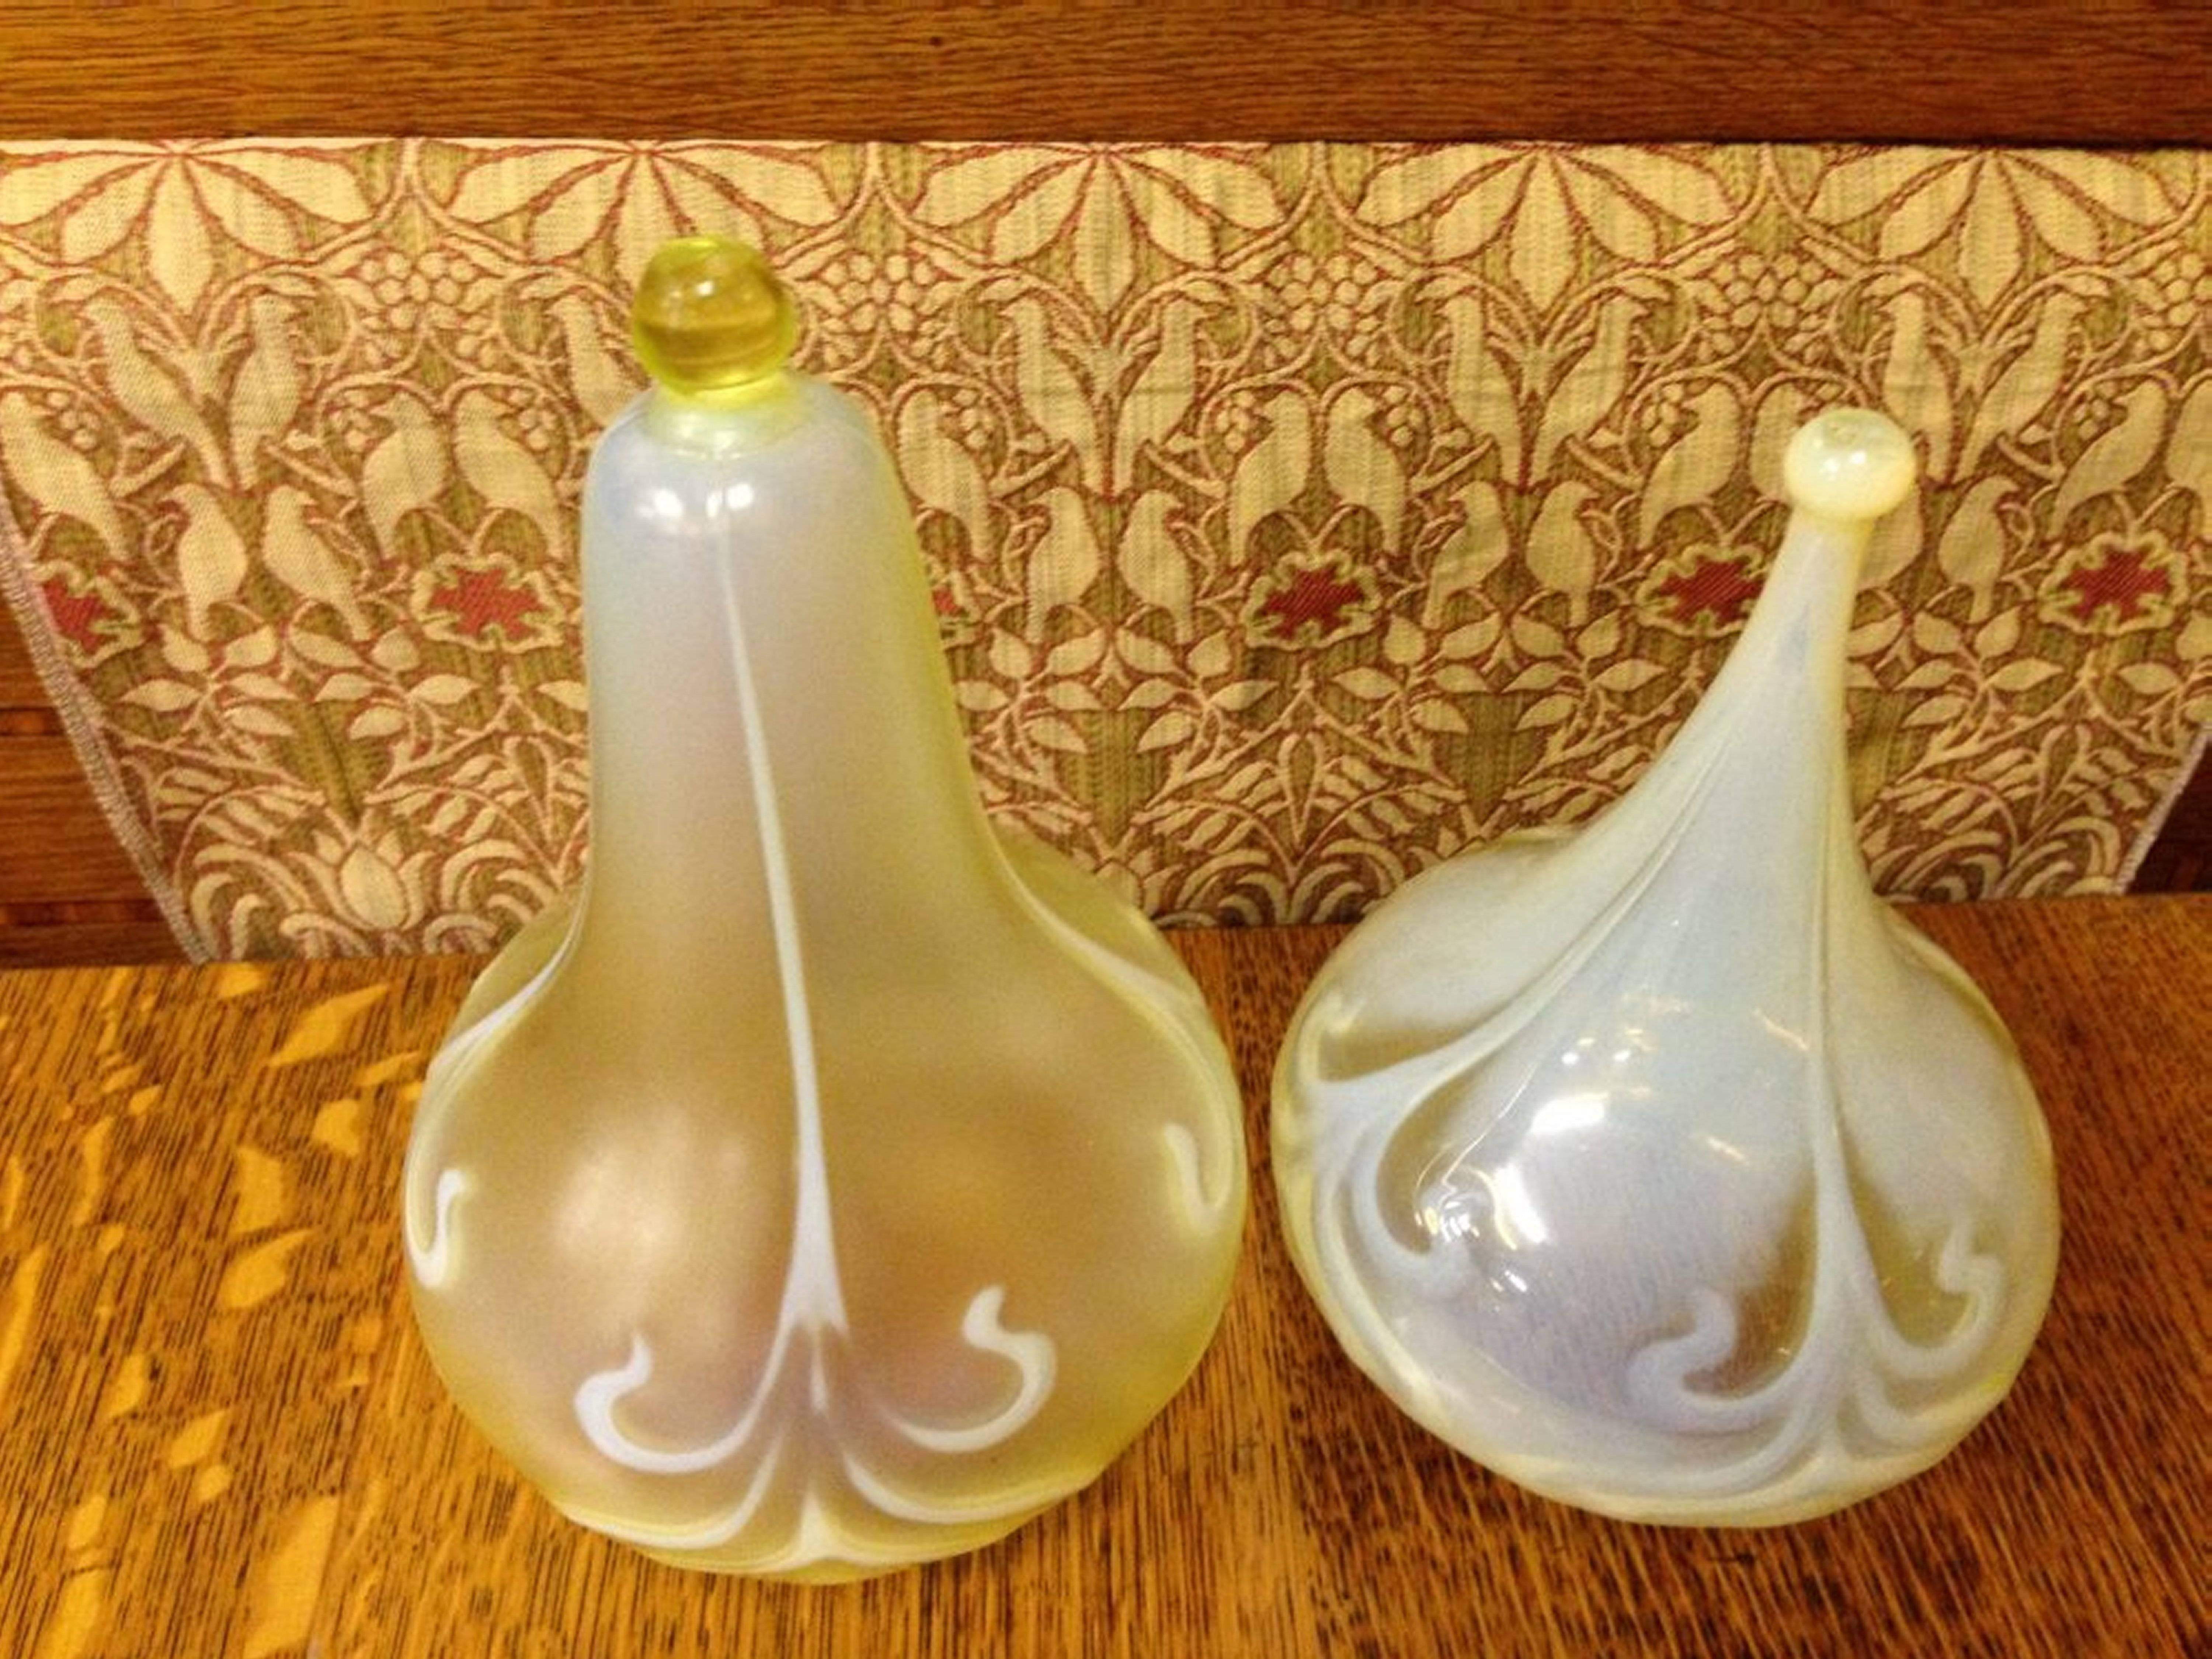 Zwei Pfauenfedern Arts and Crafts Vaseline/Uranium Glas Teardrop Schirme.
Maßnahmen: 
Linke Höhe 9